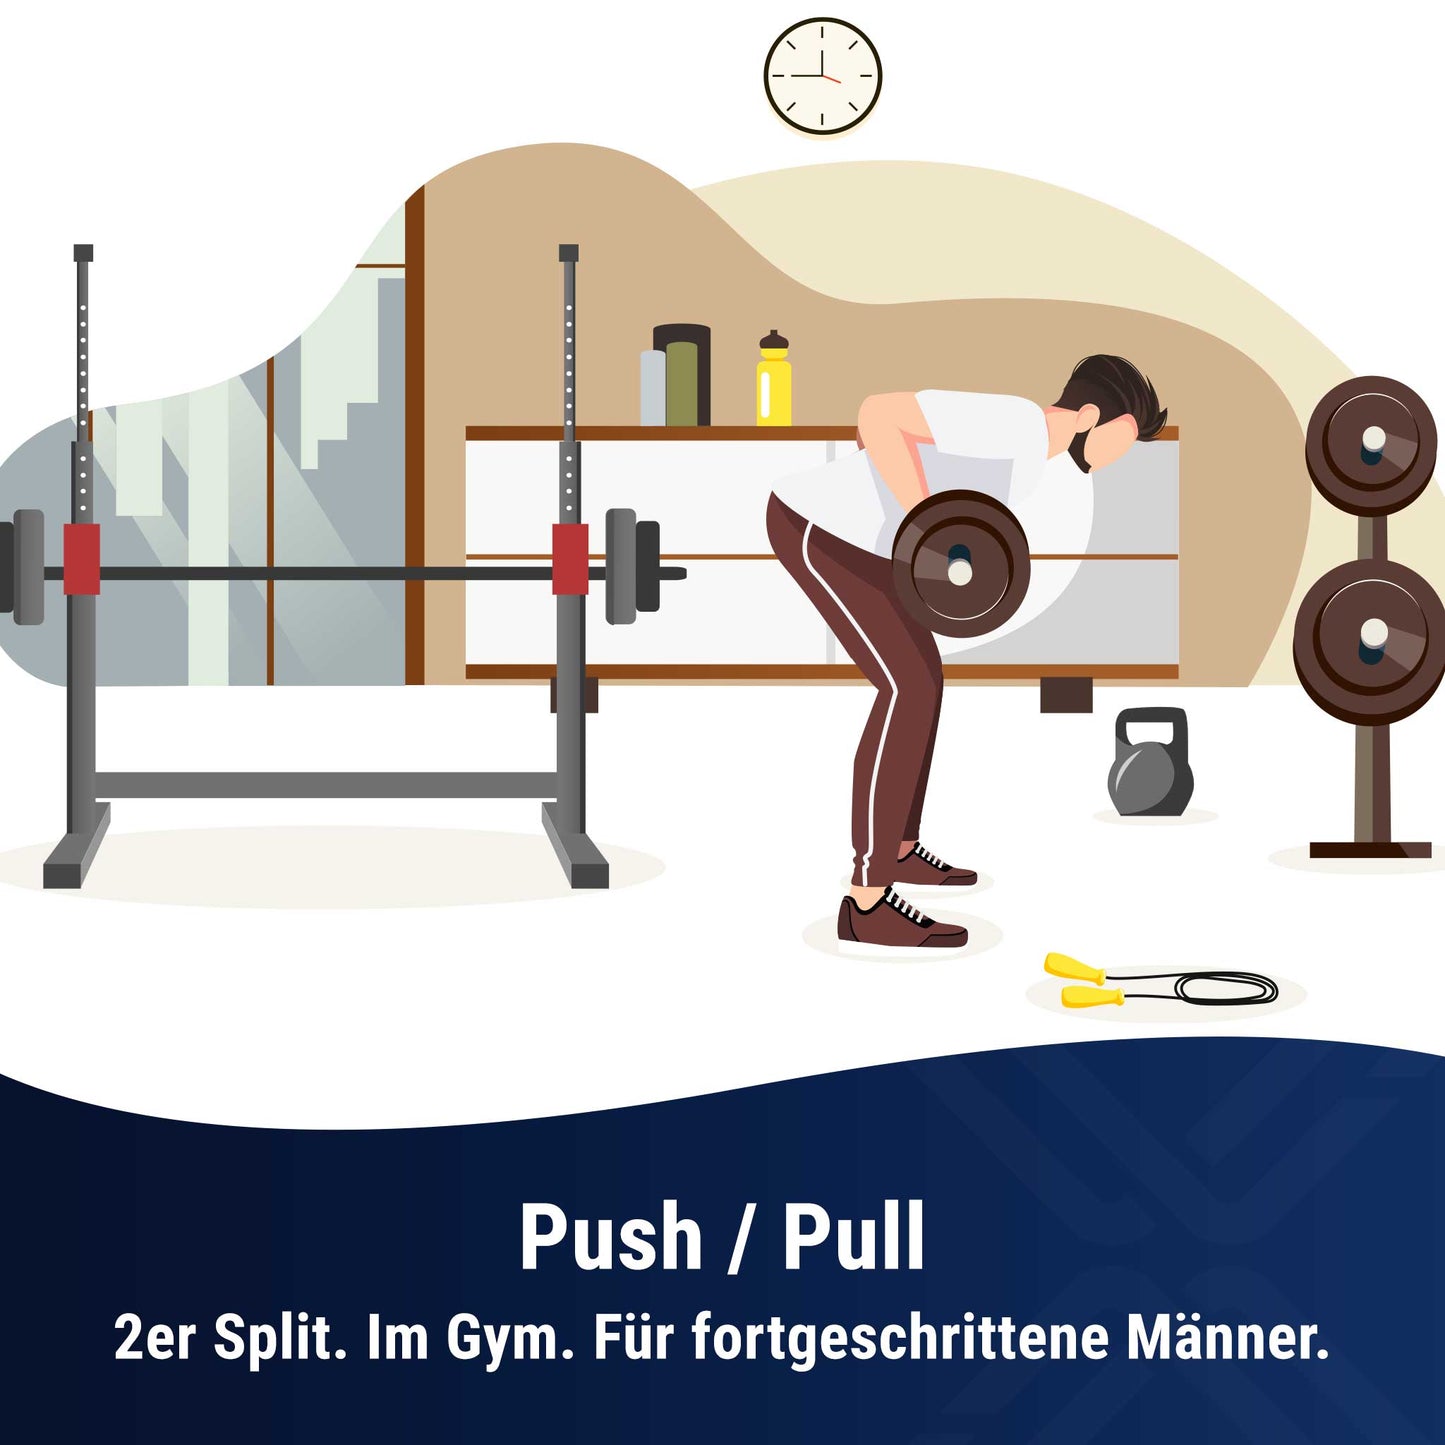 Push / Pull im Gym für fortgeschrittene Männer